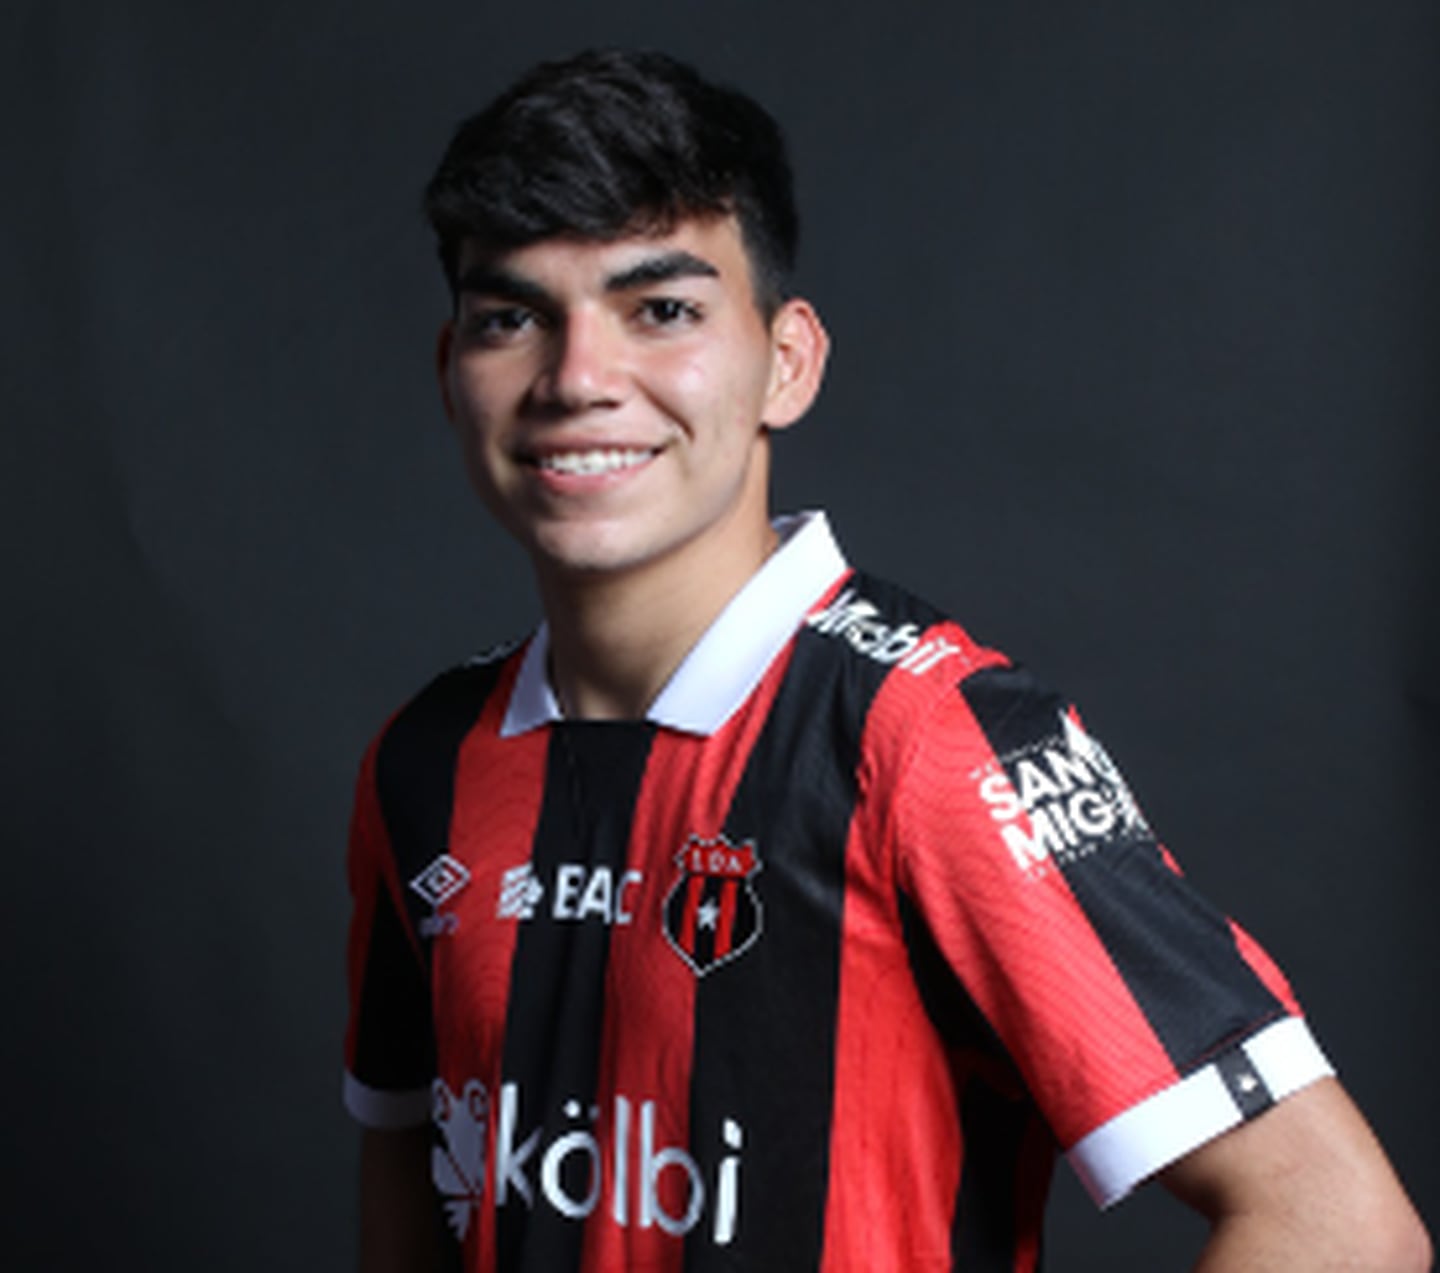 Leonardo Menjívar es nuevo futbolista de Alajuelense. Foto: Prensa Alajuelense